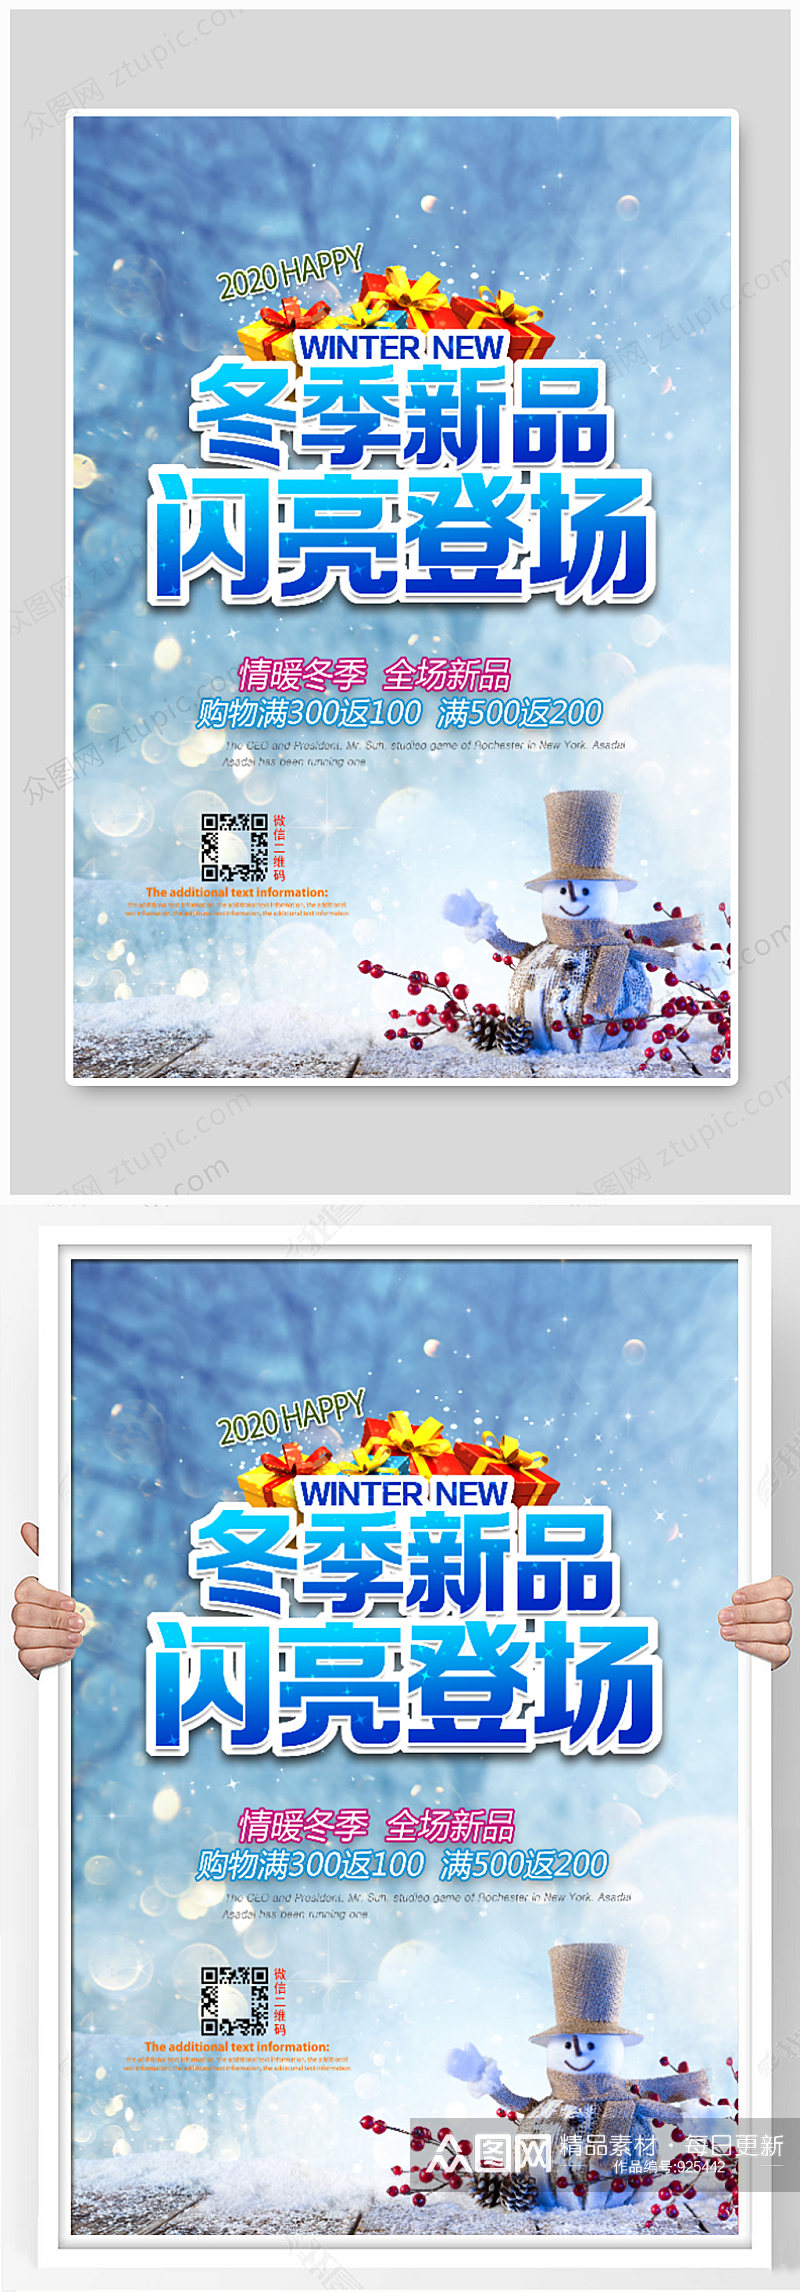 冬季新品促销活动海报设计素材